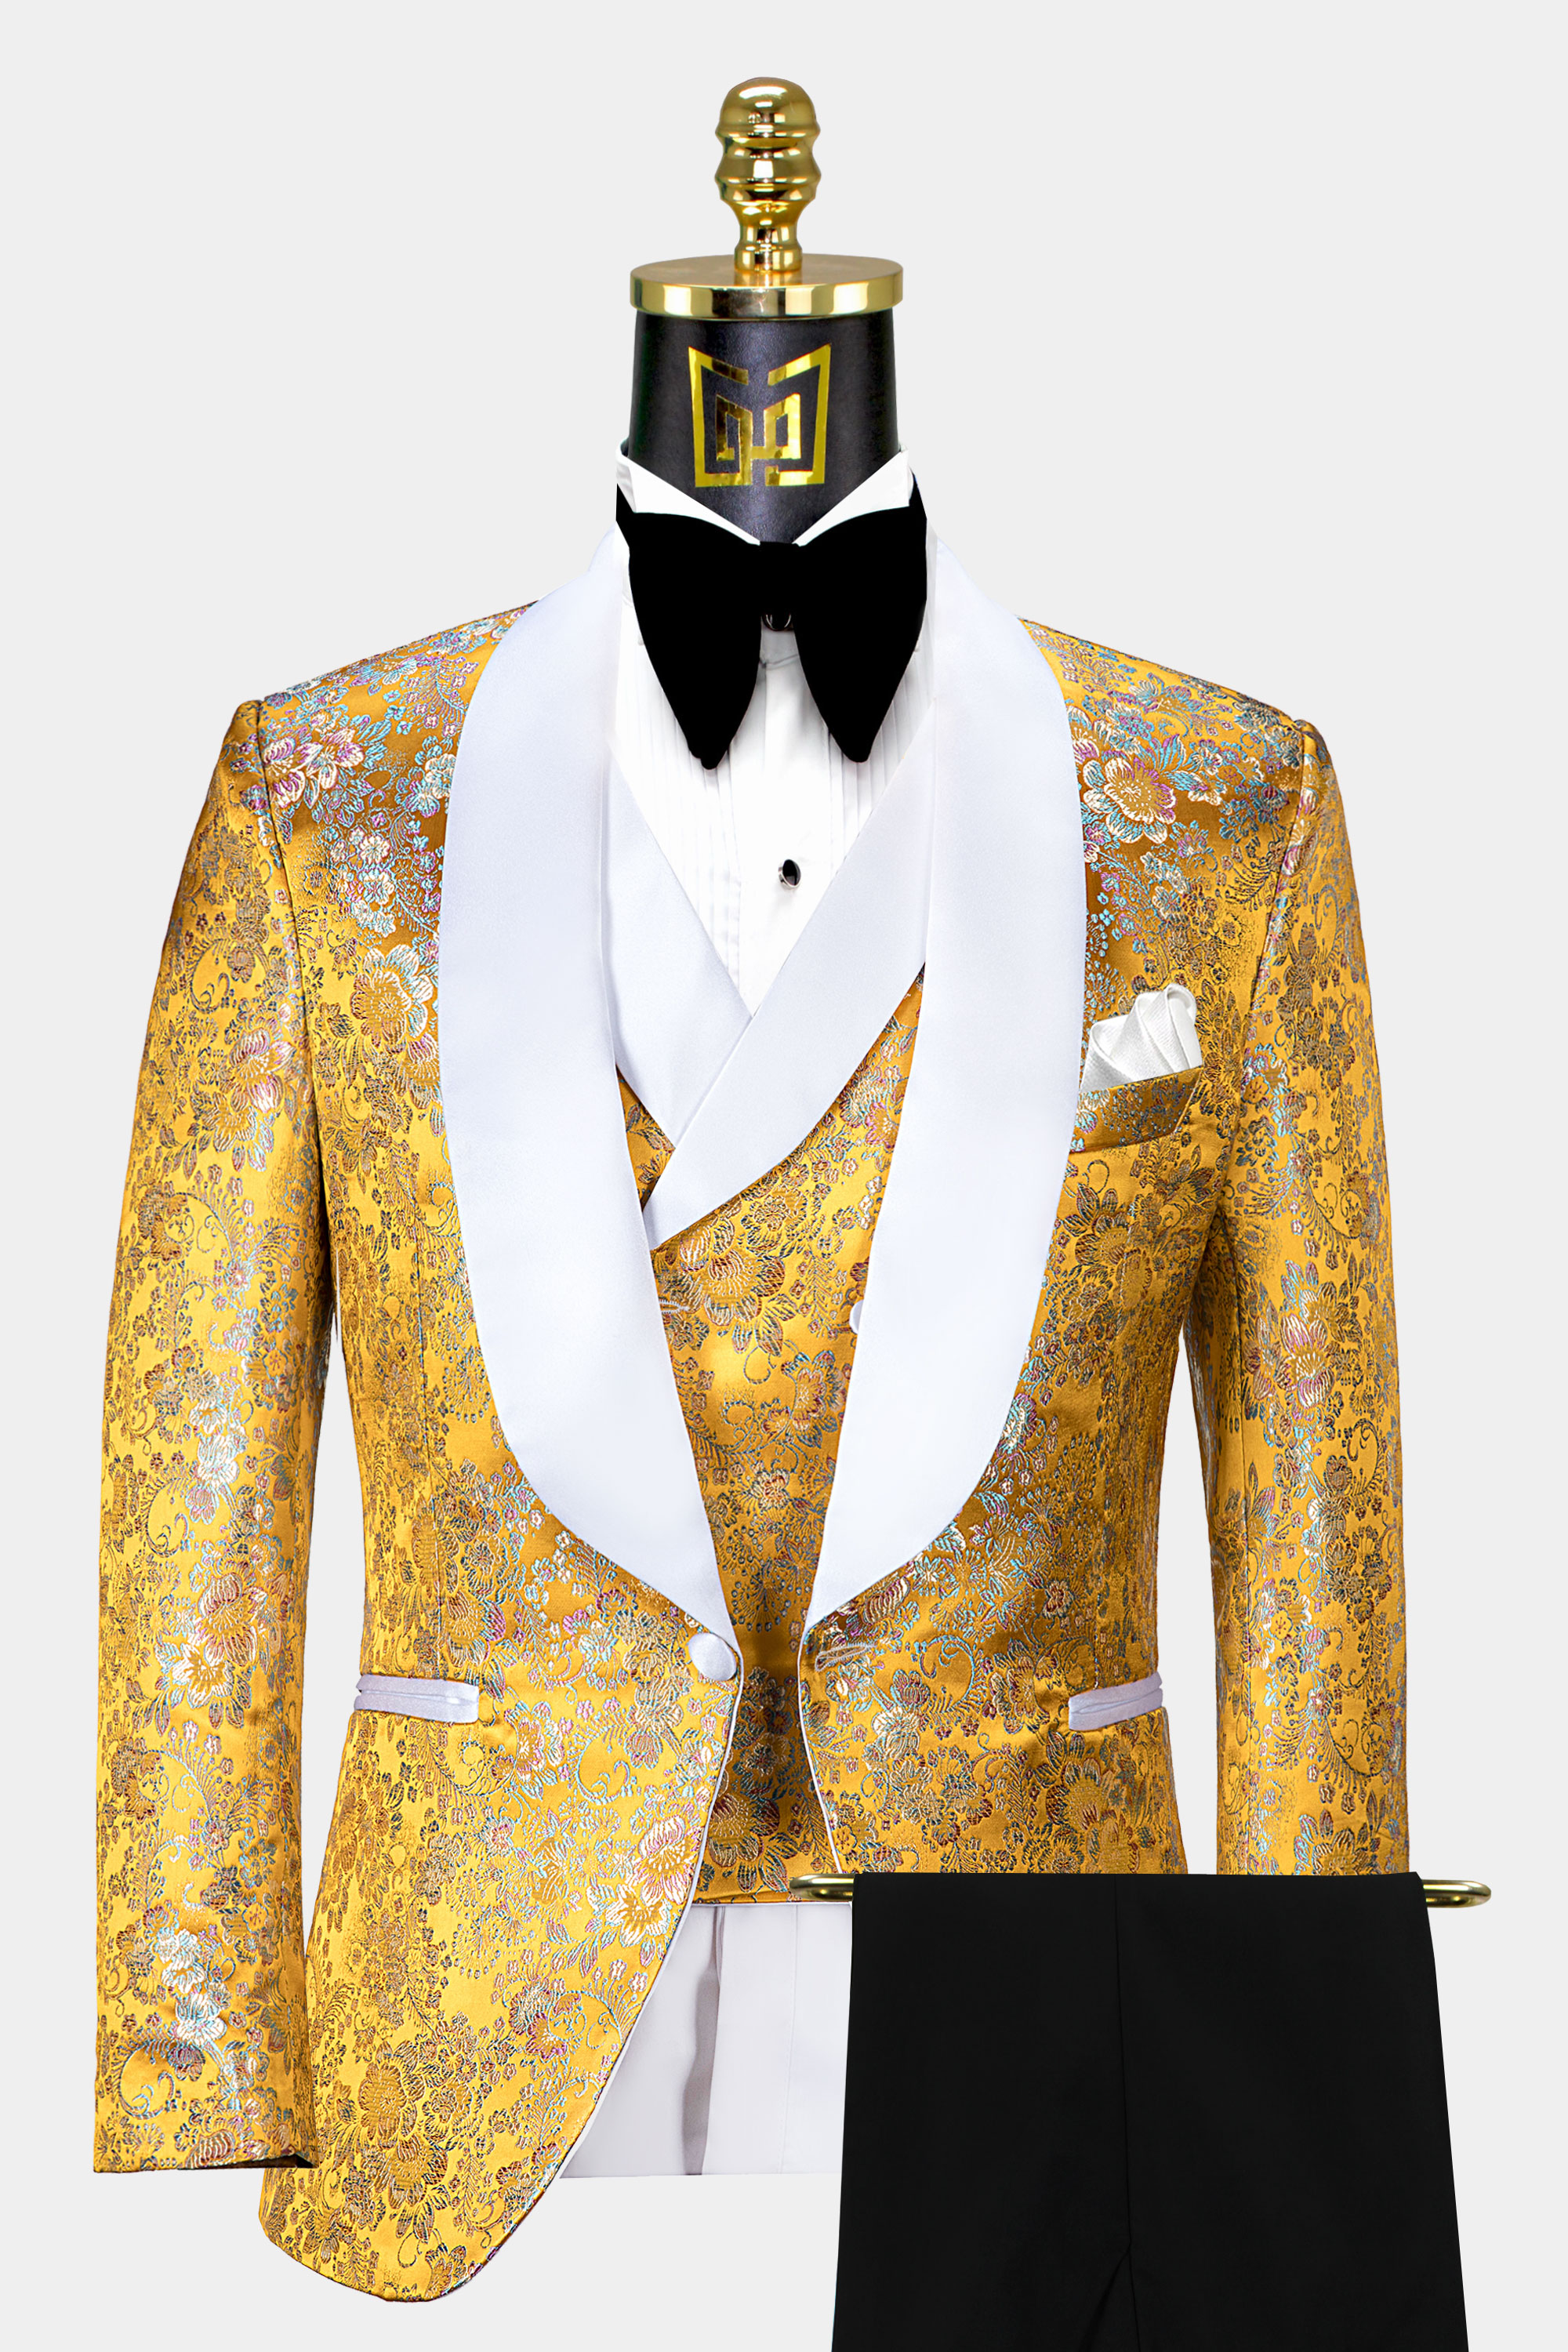 White-and-Yellow-Tuxedo-Groom-Wedding-Suit-For-Men-from-Gentlemansguru.com